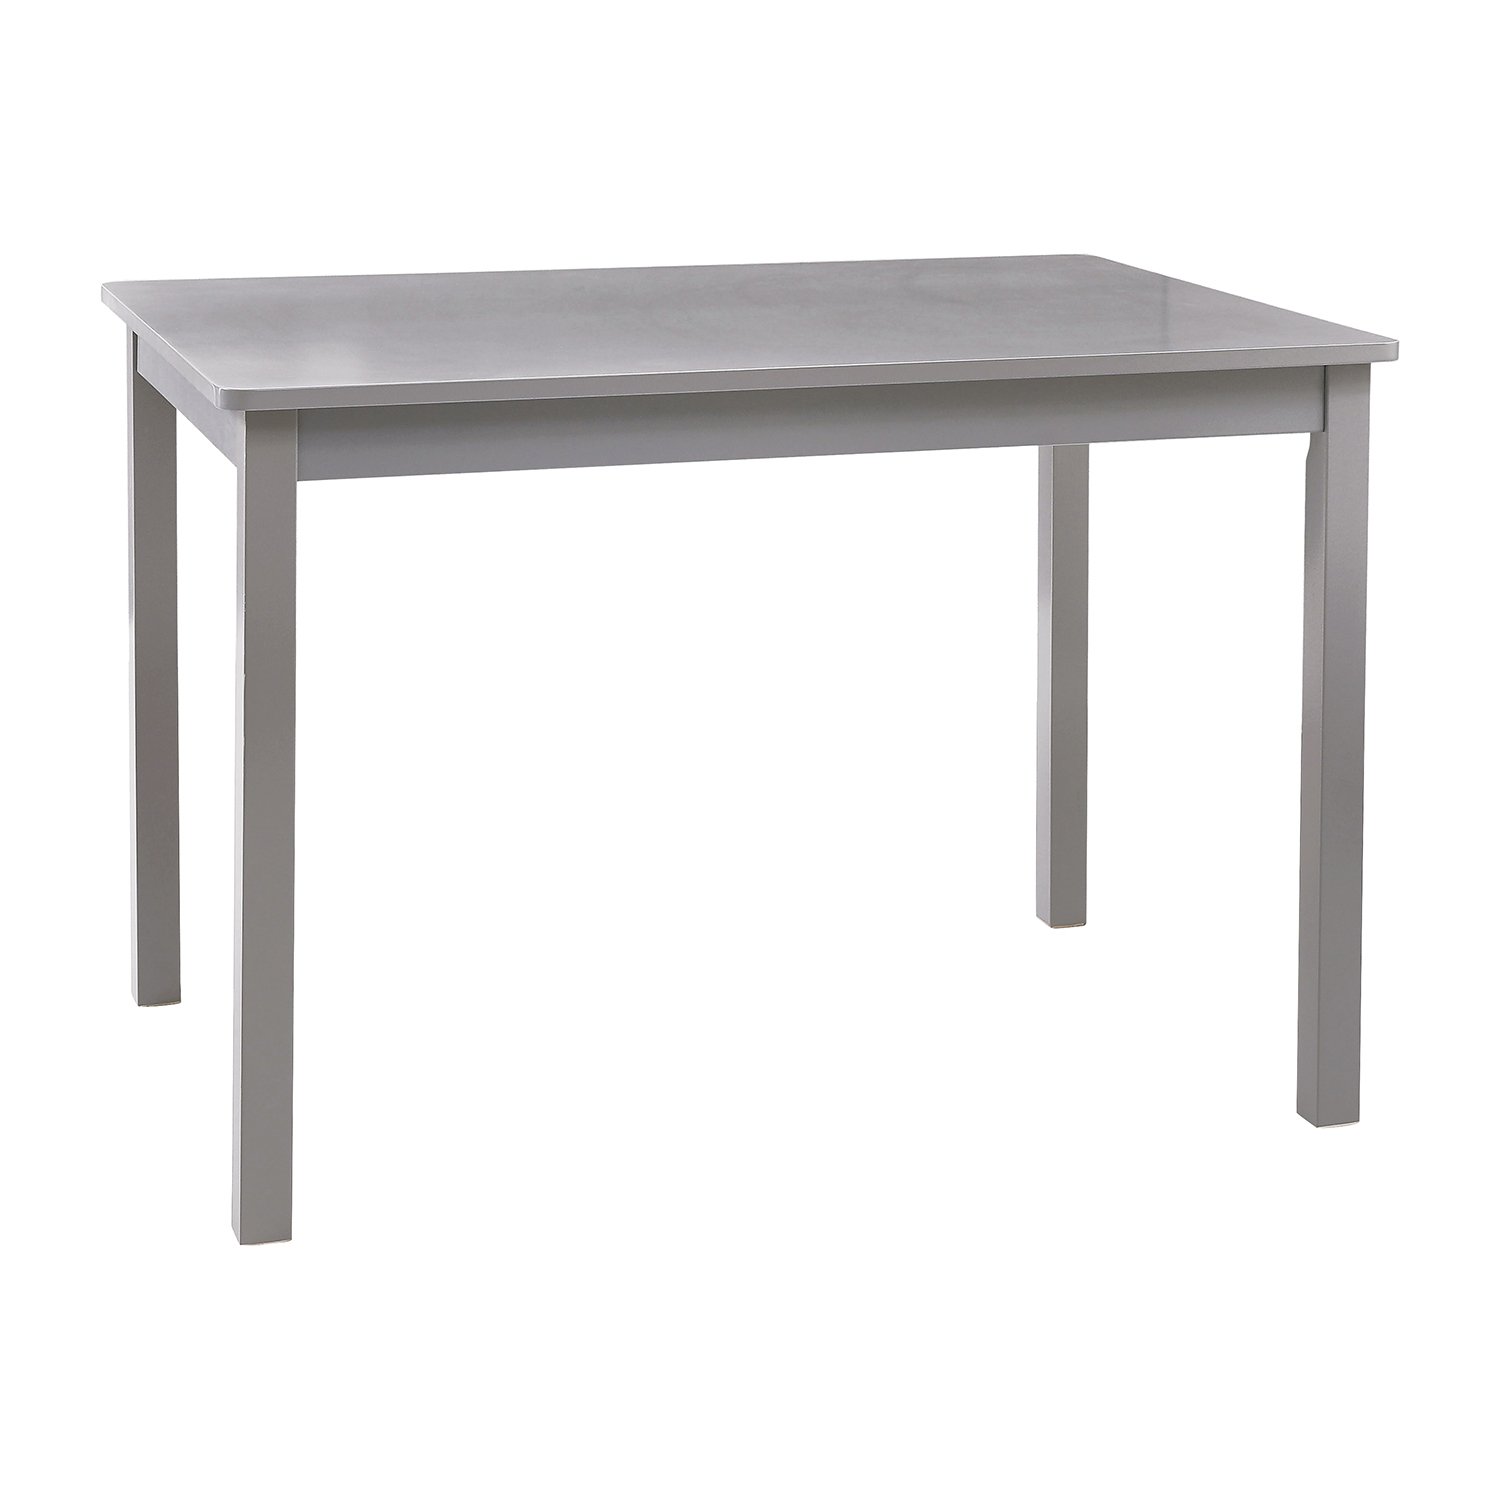 D859-10G table.jpg